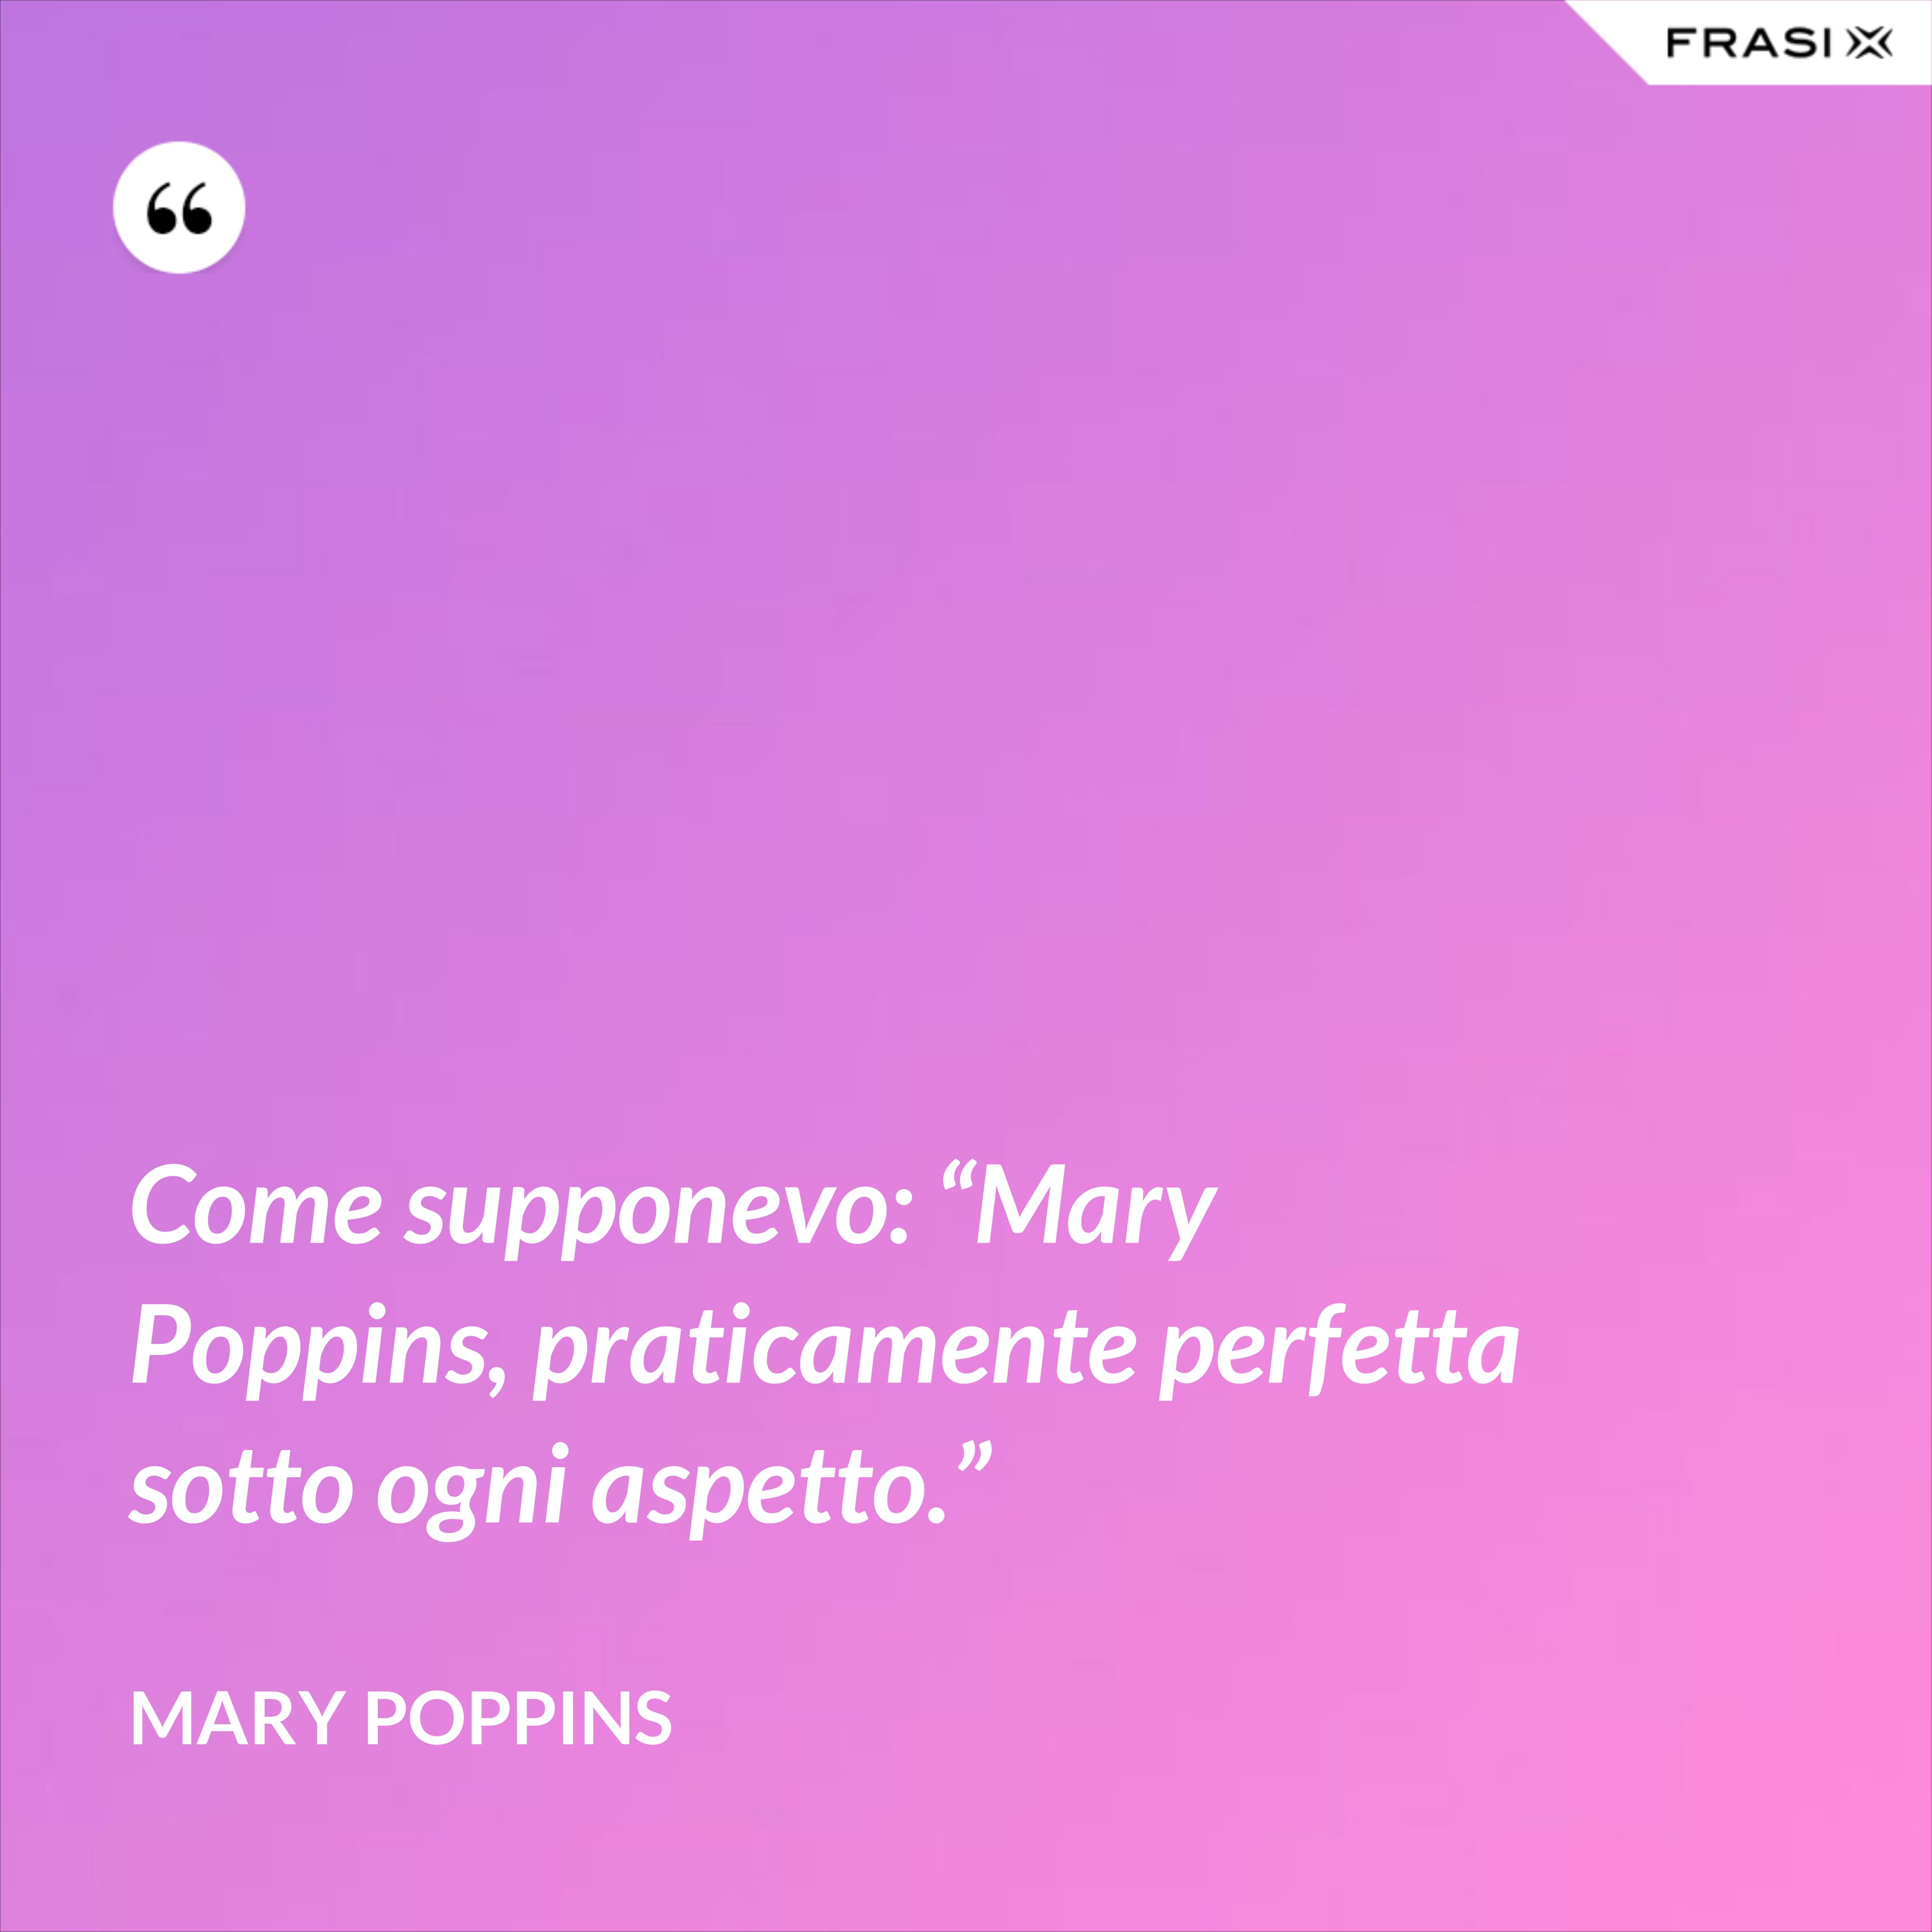 Come supponevo: “Mary Poppins, praticamente perfetta sotto ogni aspetto.” - Mary Poppins